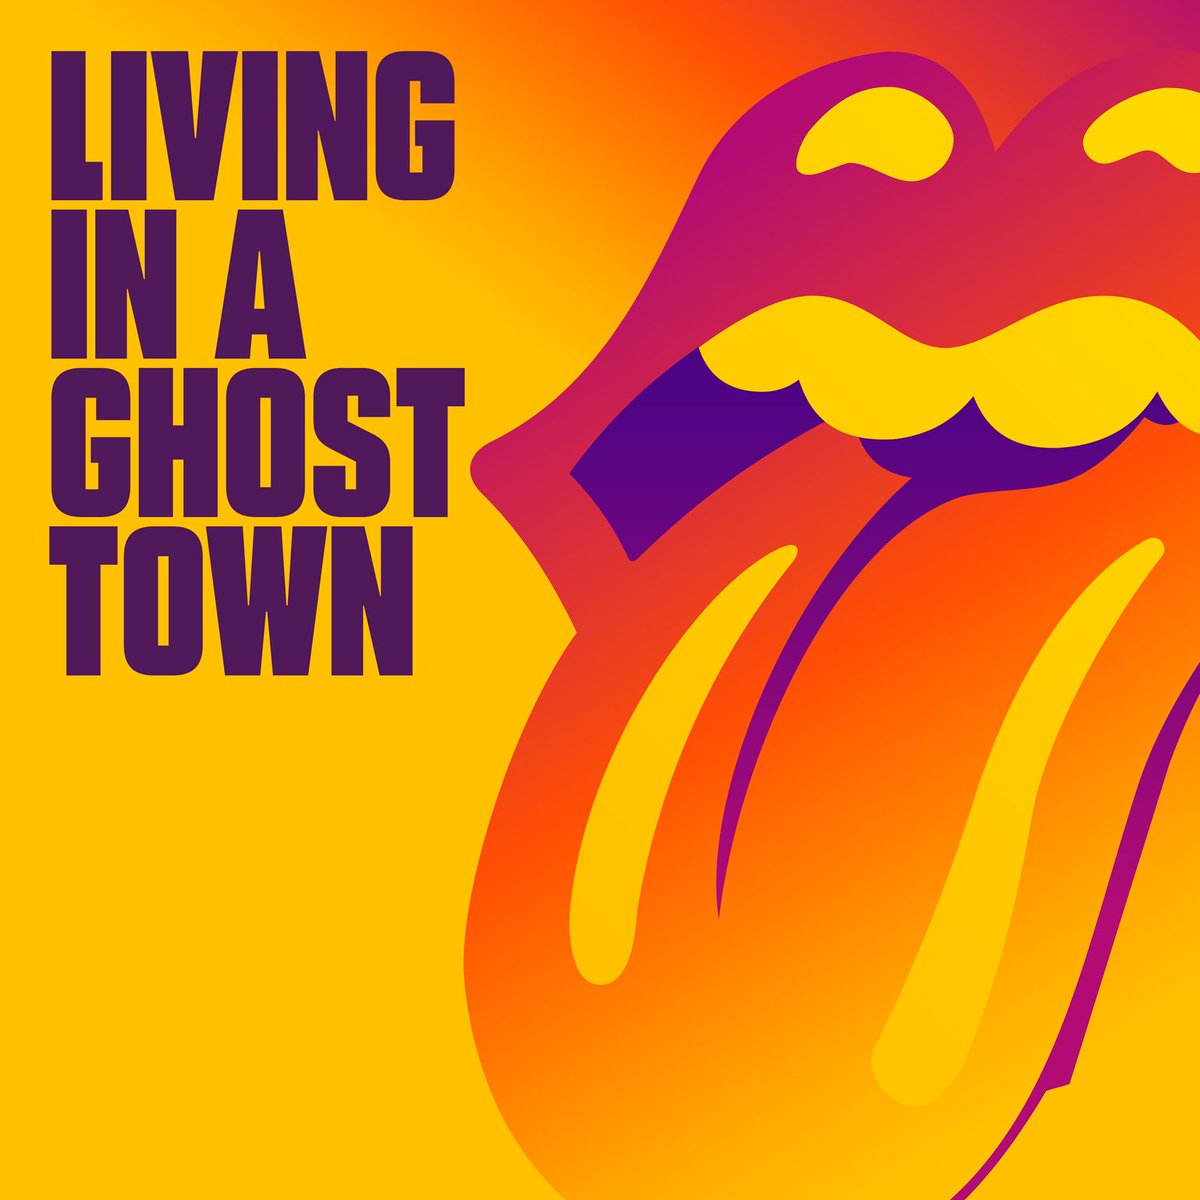 in a ghost town》的mv以"鱼眼"镜头的方式,分别展现了滚石乐队在录音